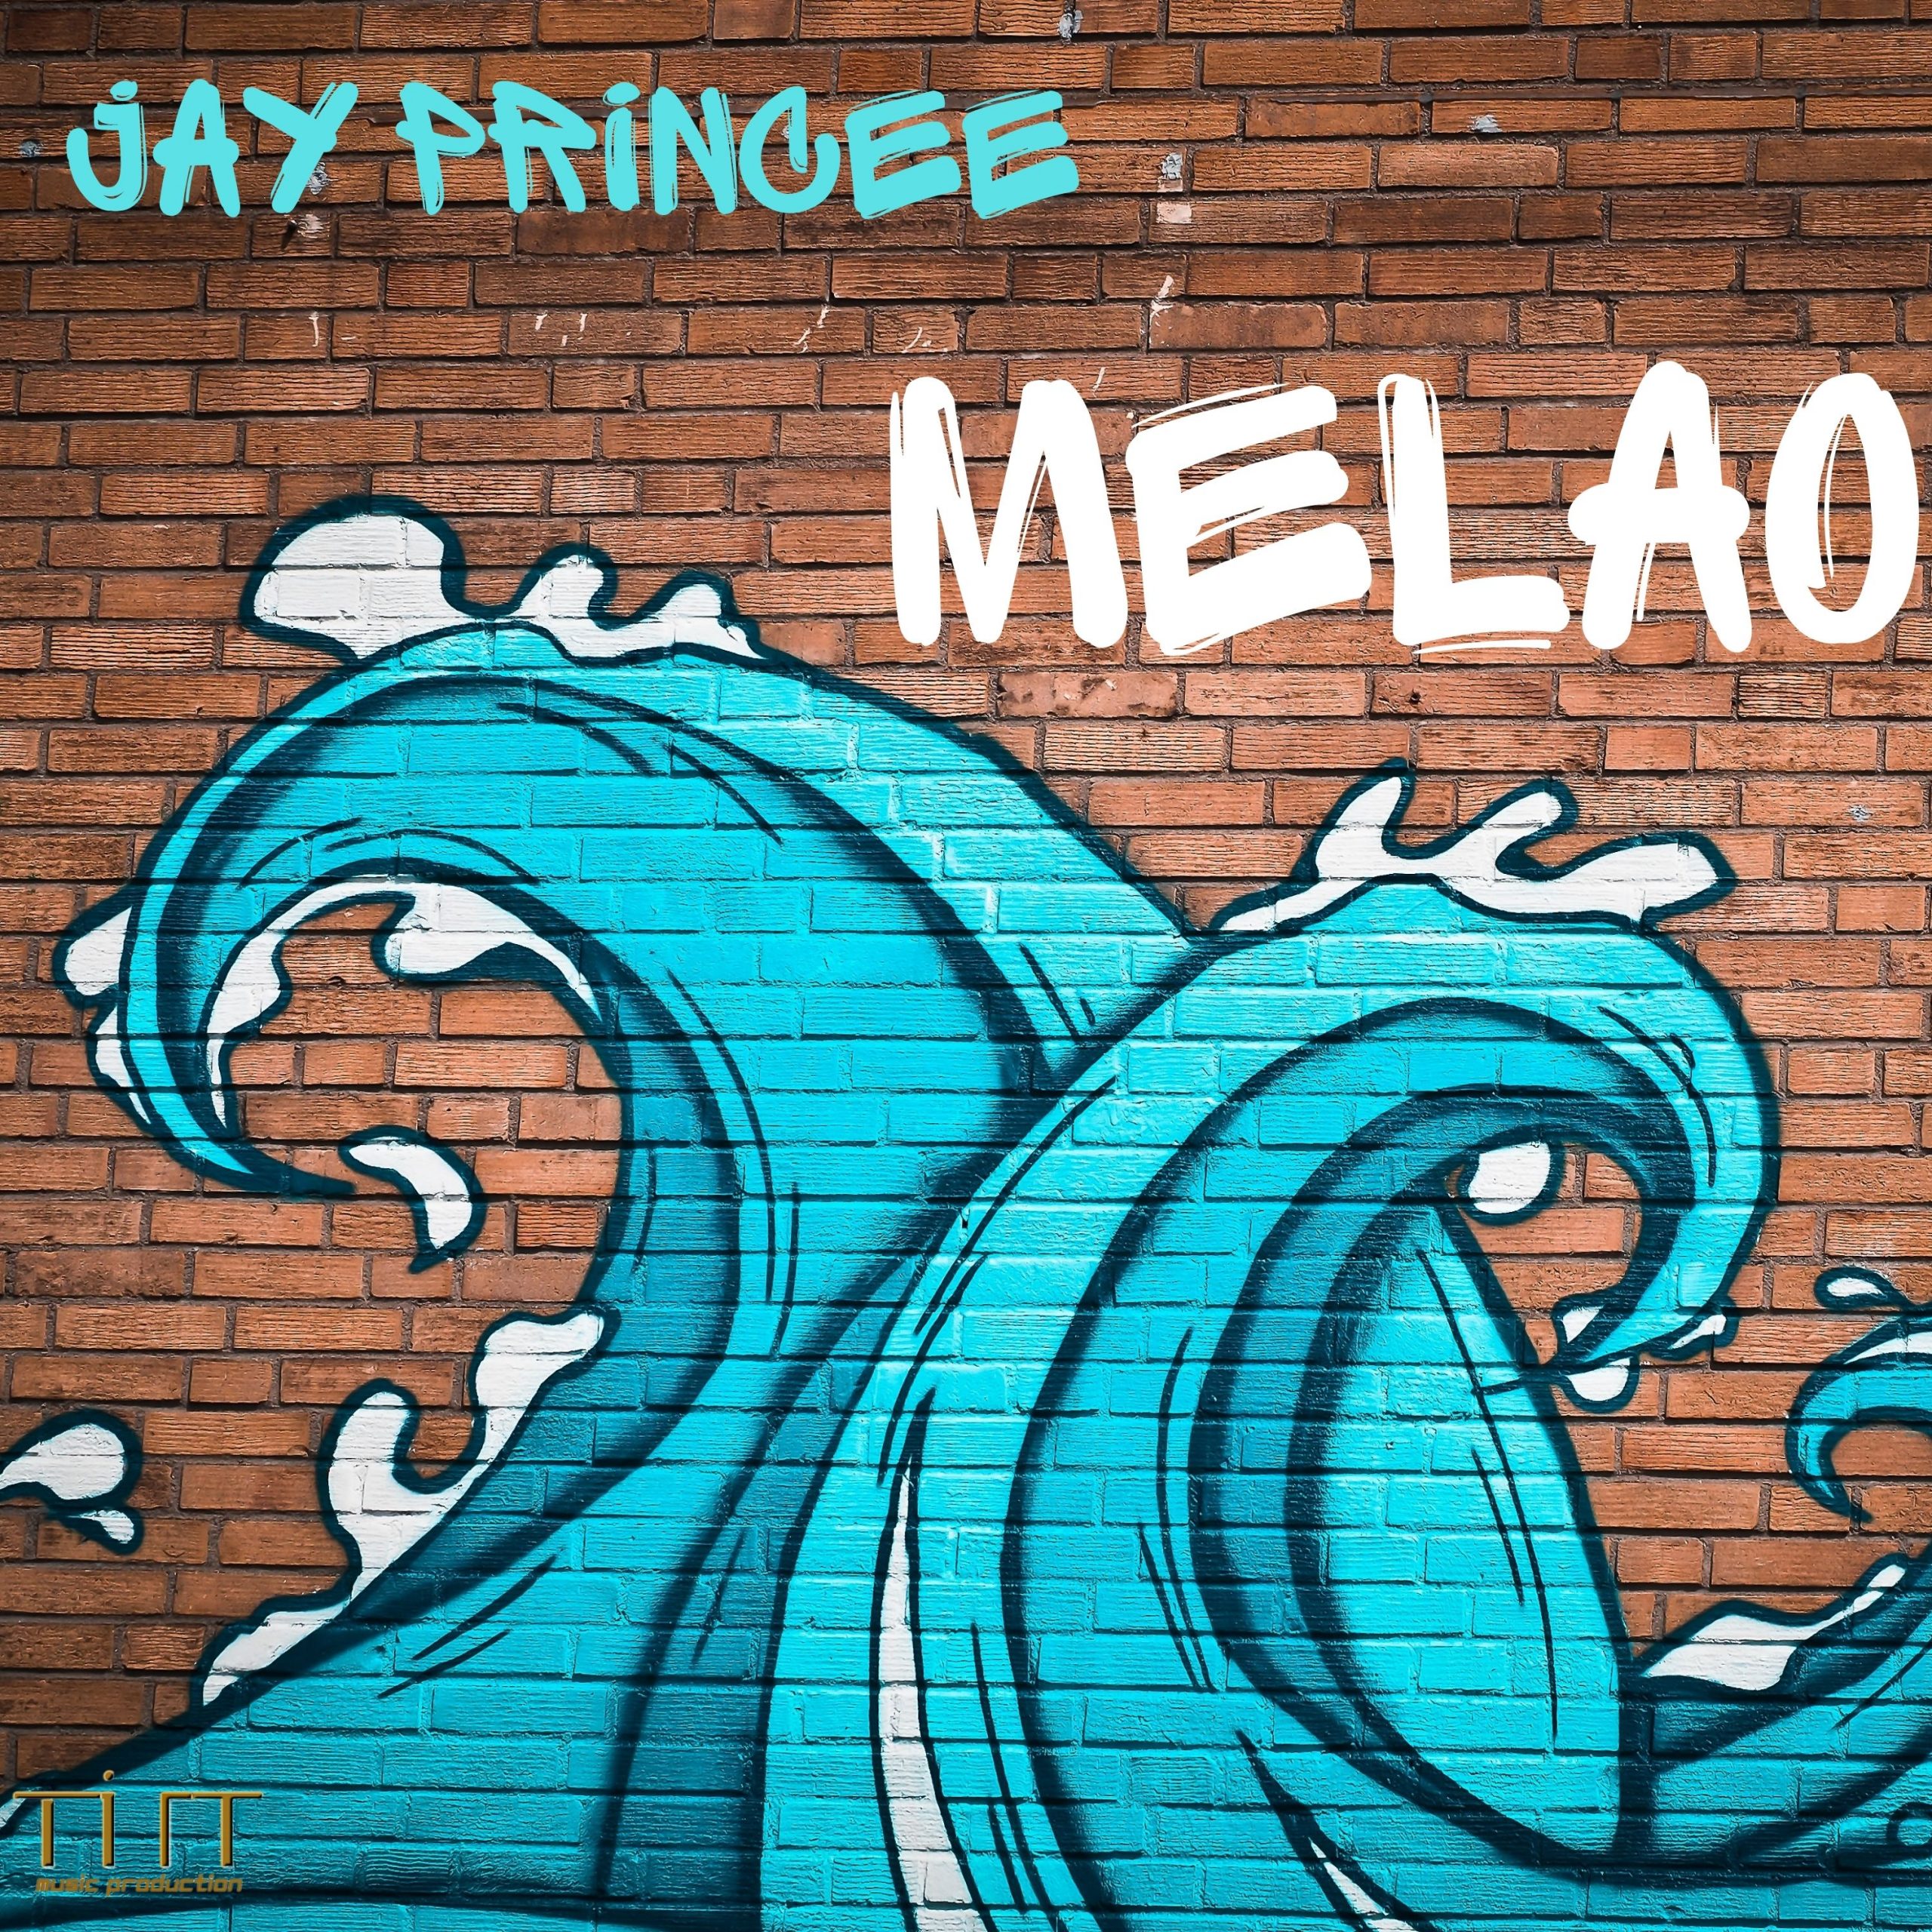 Jay Princee, disponibile in streaming e download il nuovo brano “Melao”